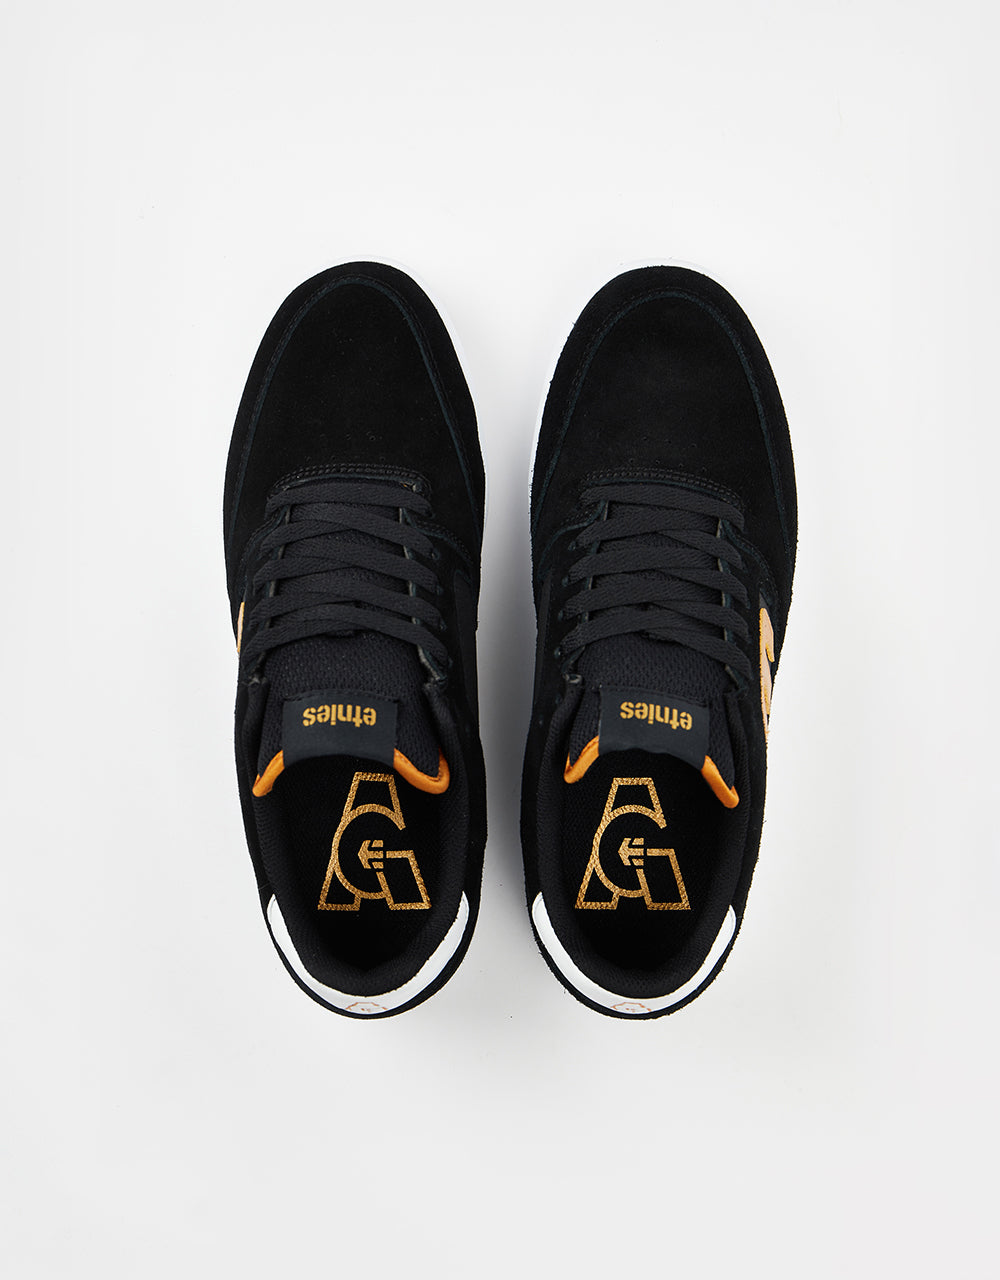 Etnies x Michelin Veer Skate Shoes - Black/Gold/White